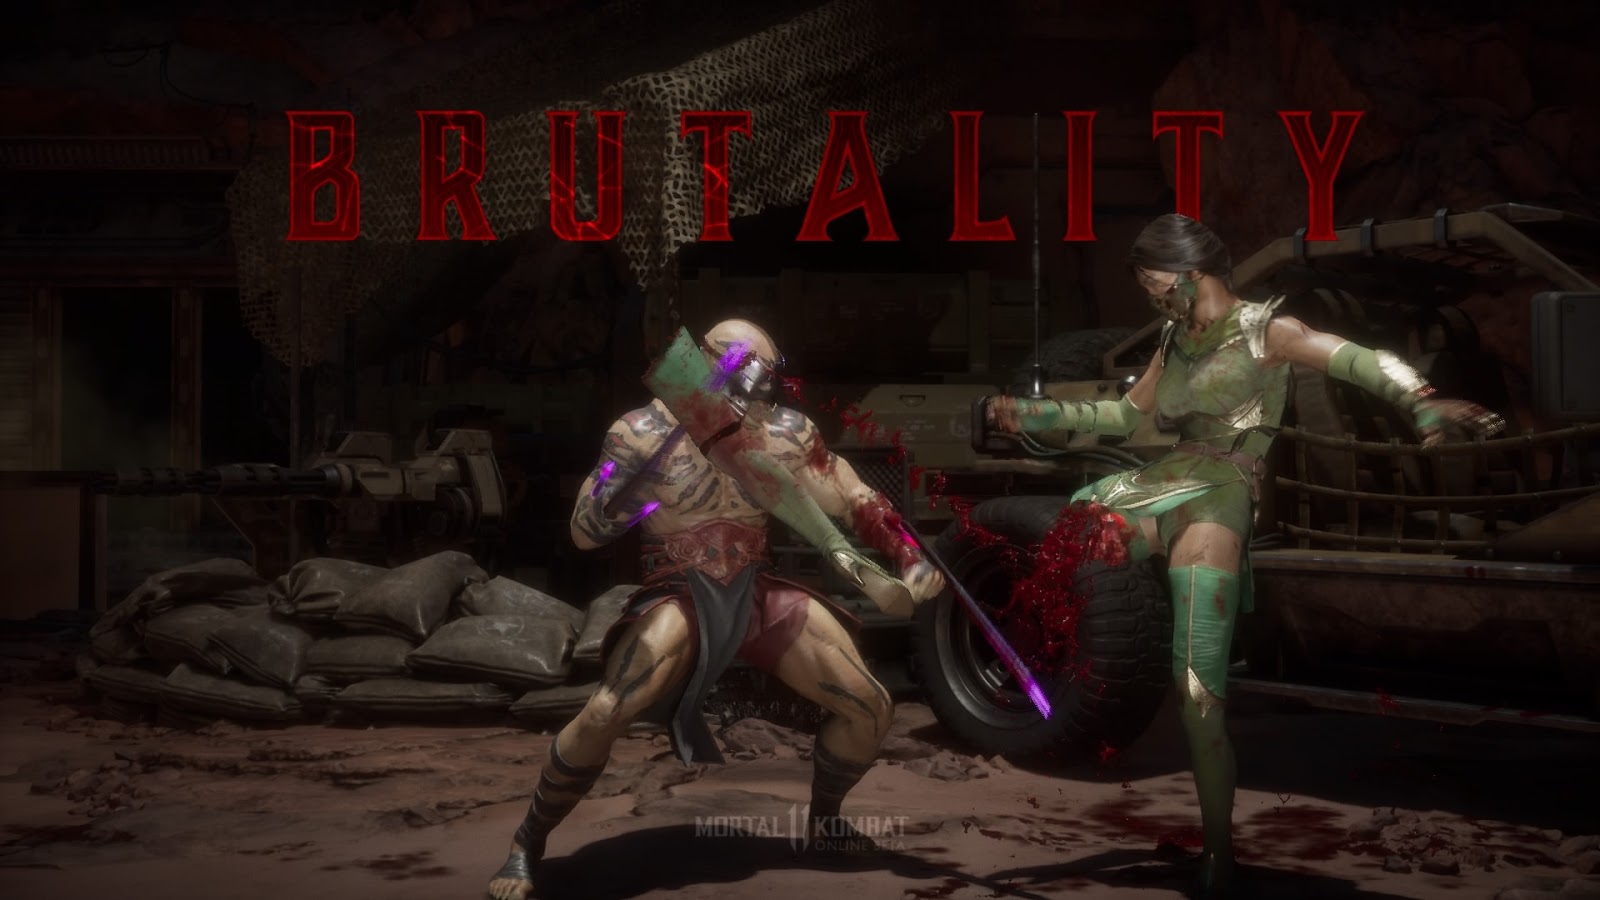 5 mortes toscas dos novos Mortal Kombat que você nem percebeu (MK 9, X e 11)